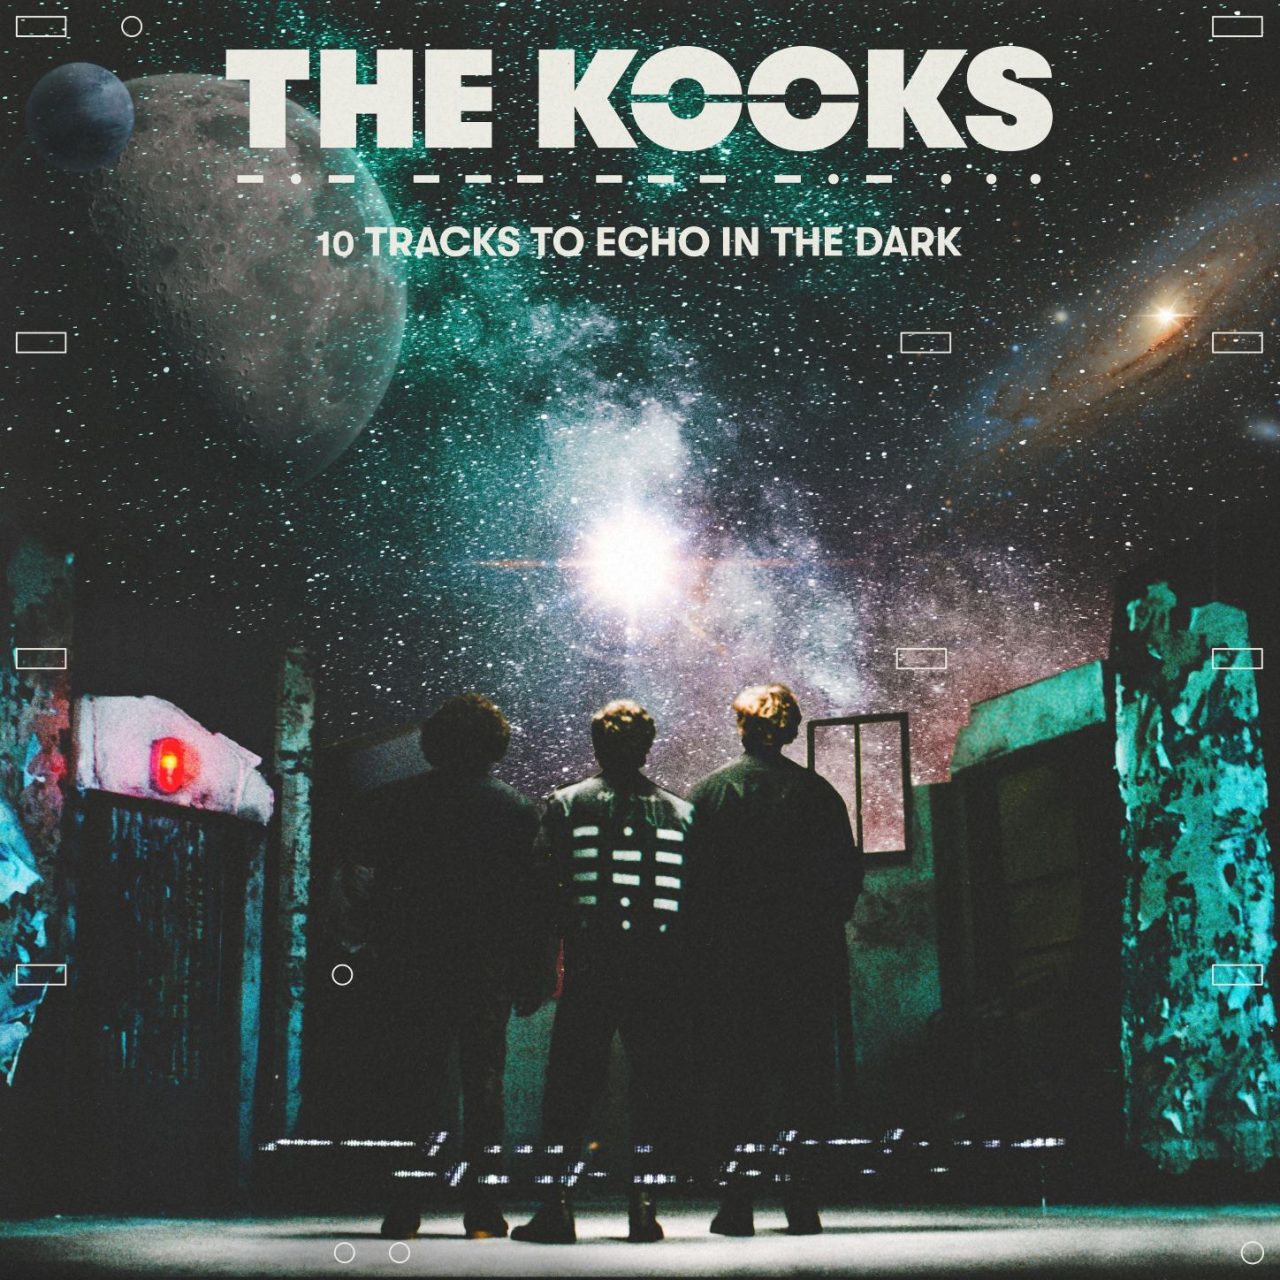 Album-Cover: Die drei Bandmitglieder von The Kooks stehen in einem offenen Raum mit Blick auf eine entfernte Galaxie im Weltraum.